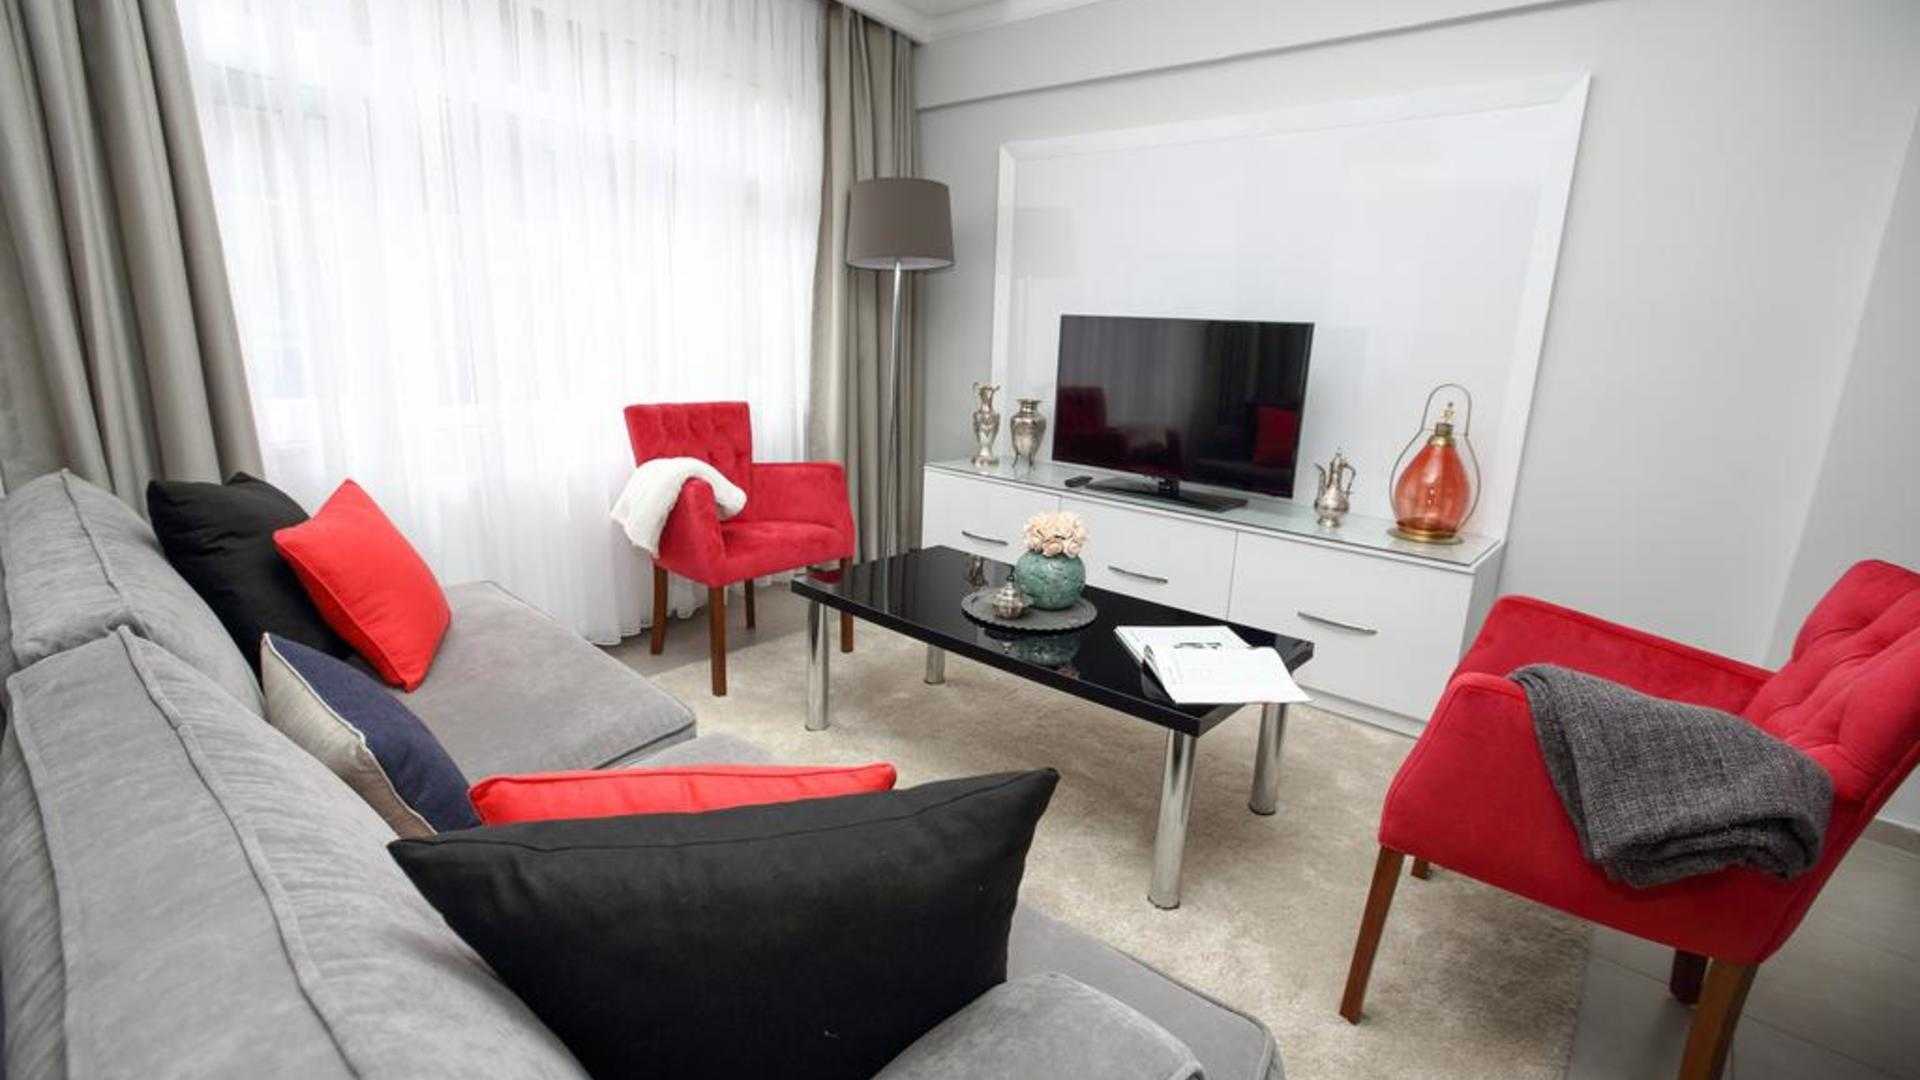 Как снять квартиру в стамбуле — практические советы - 2022